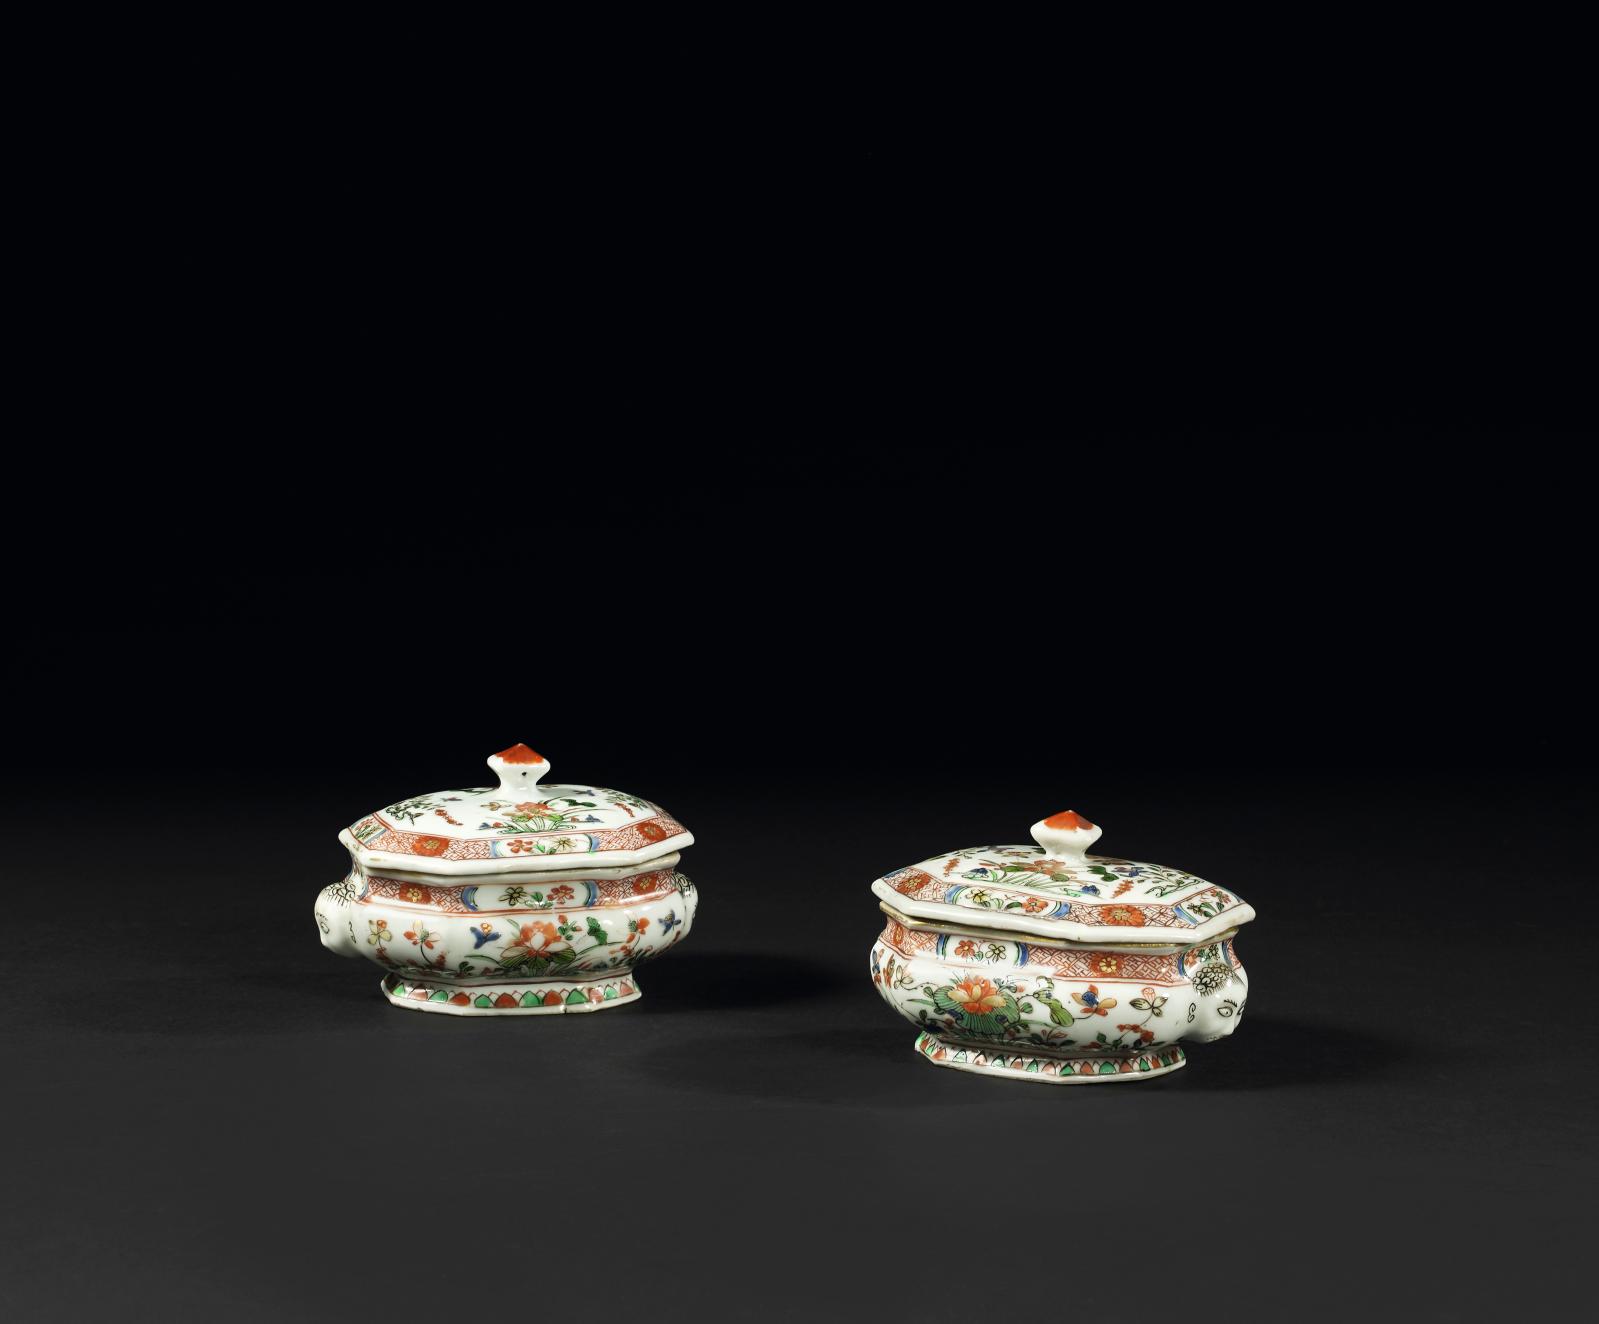 Chine, XVIIIe siècle, époque Kangxi (1661-1722). Paire de boîtes à épices couvertes de forme ovale à pans coupés à trois compartiments, décor polychro